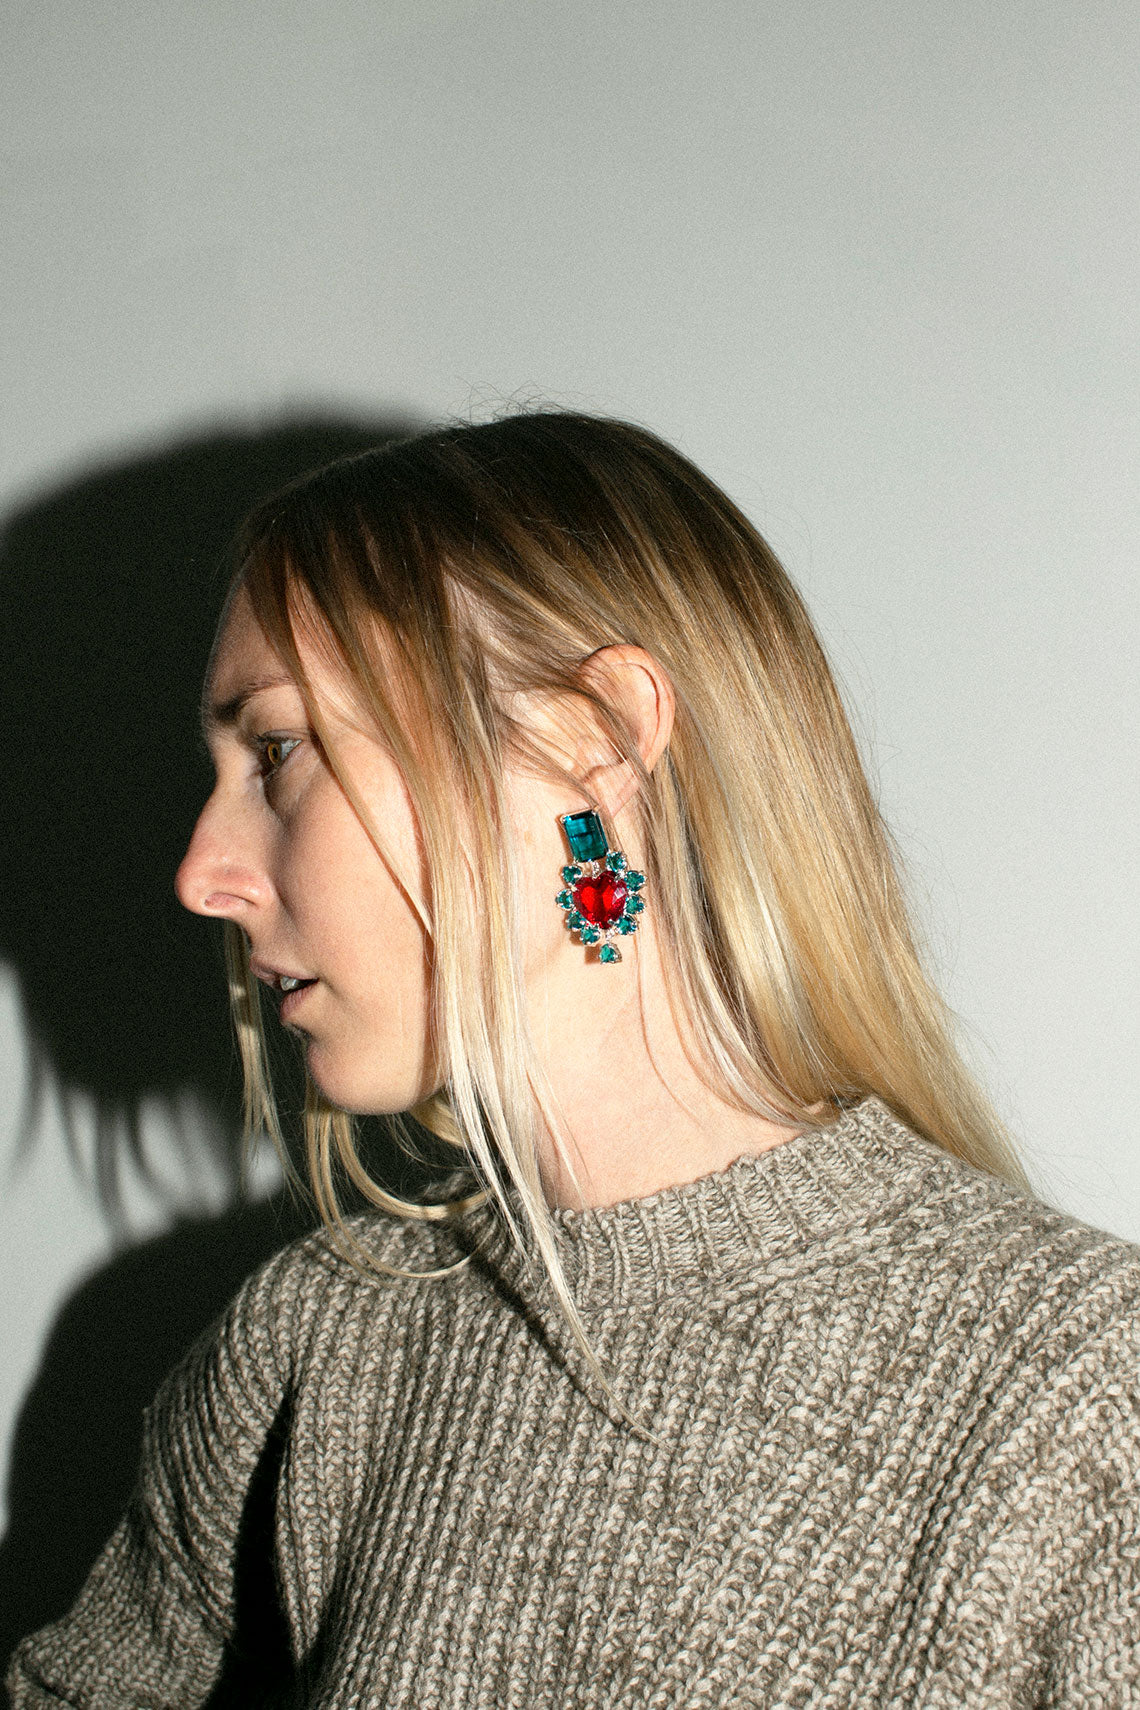 Turquoise & Red El Sabor Earrings